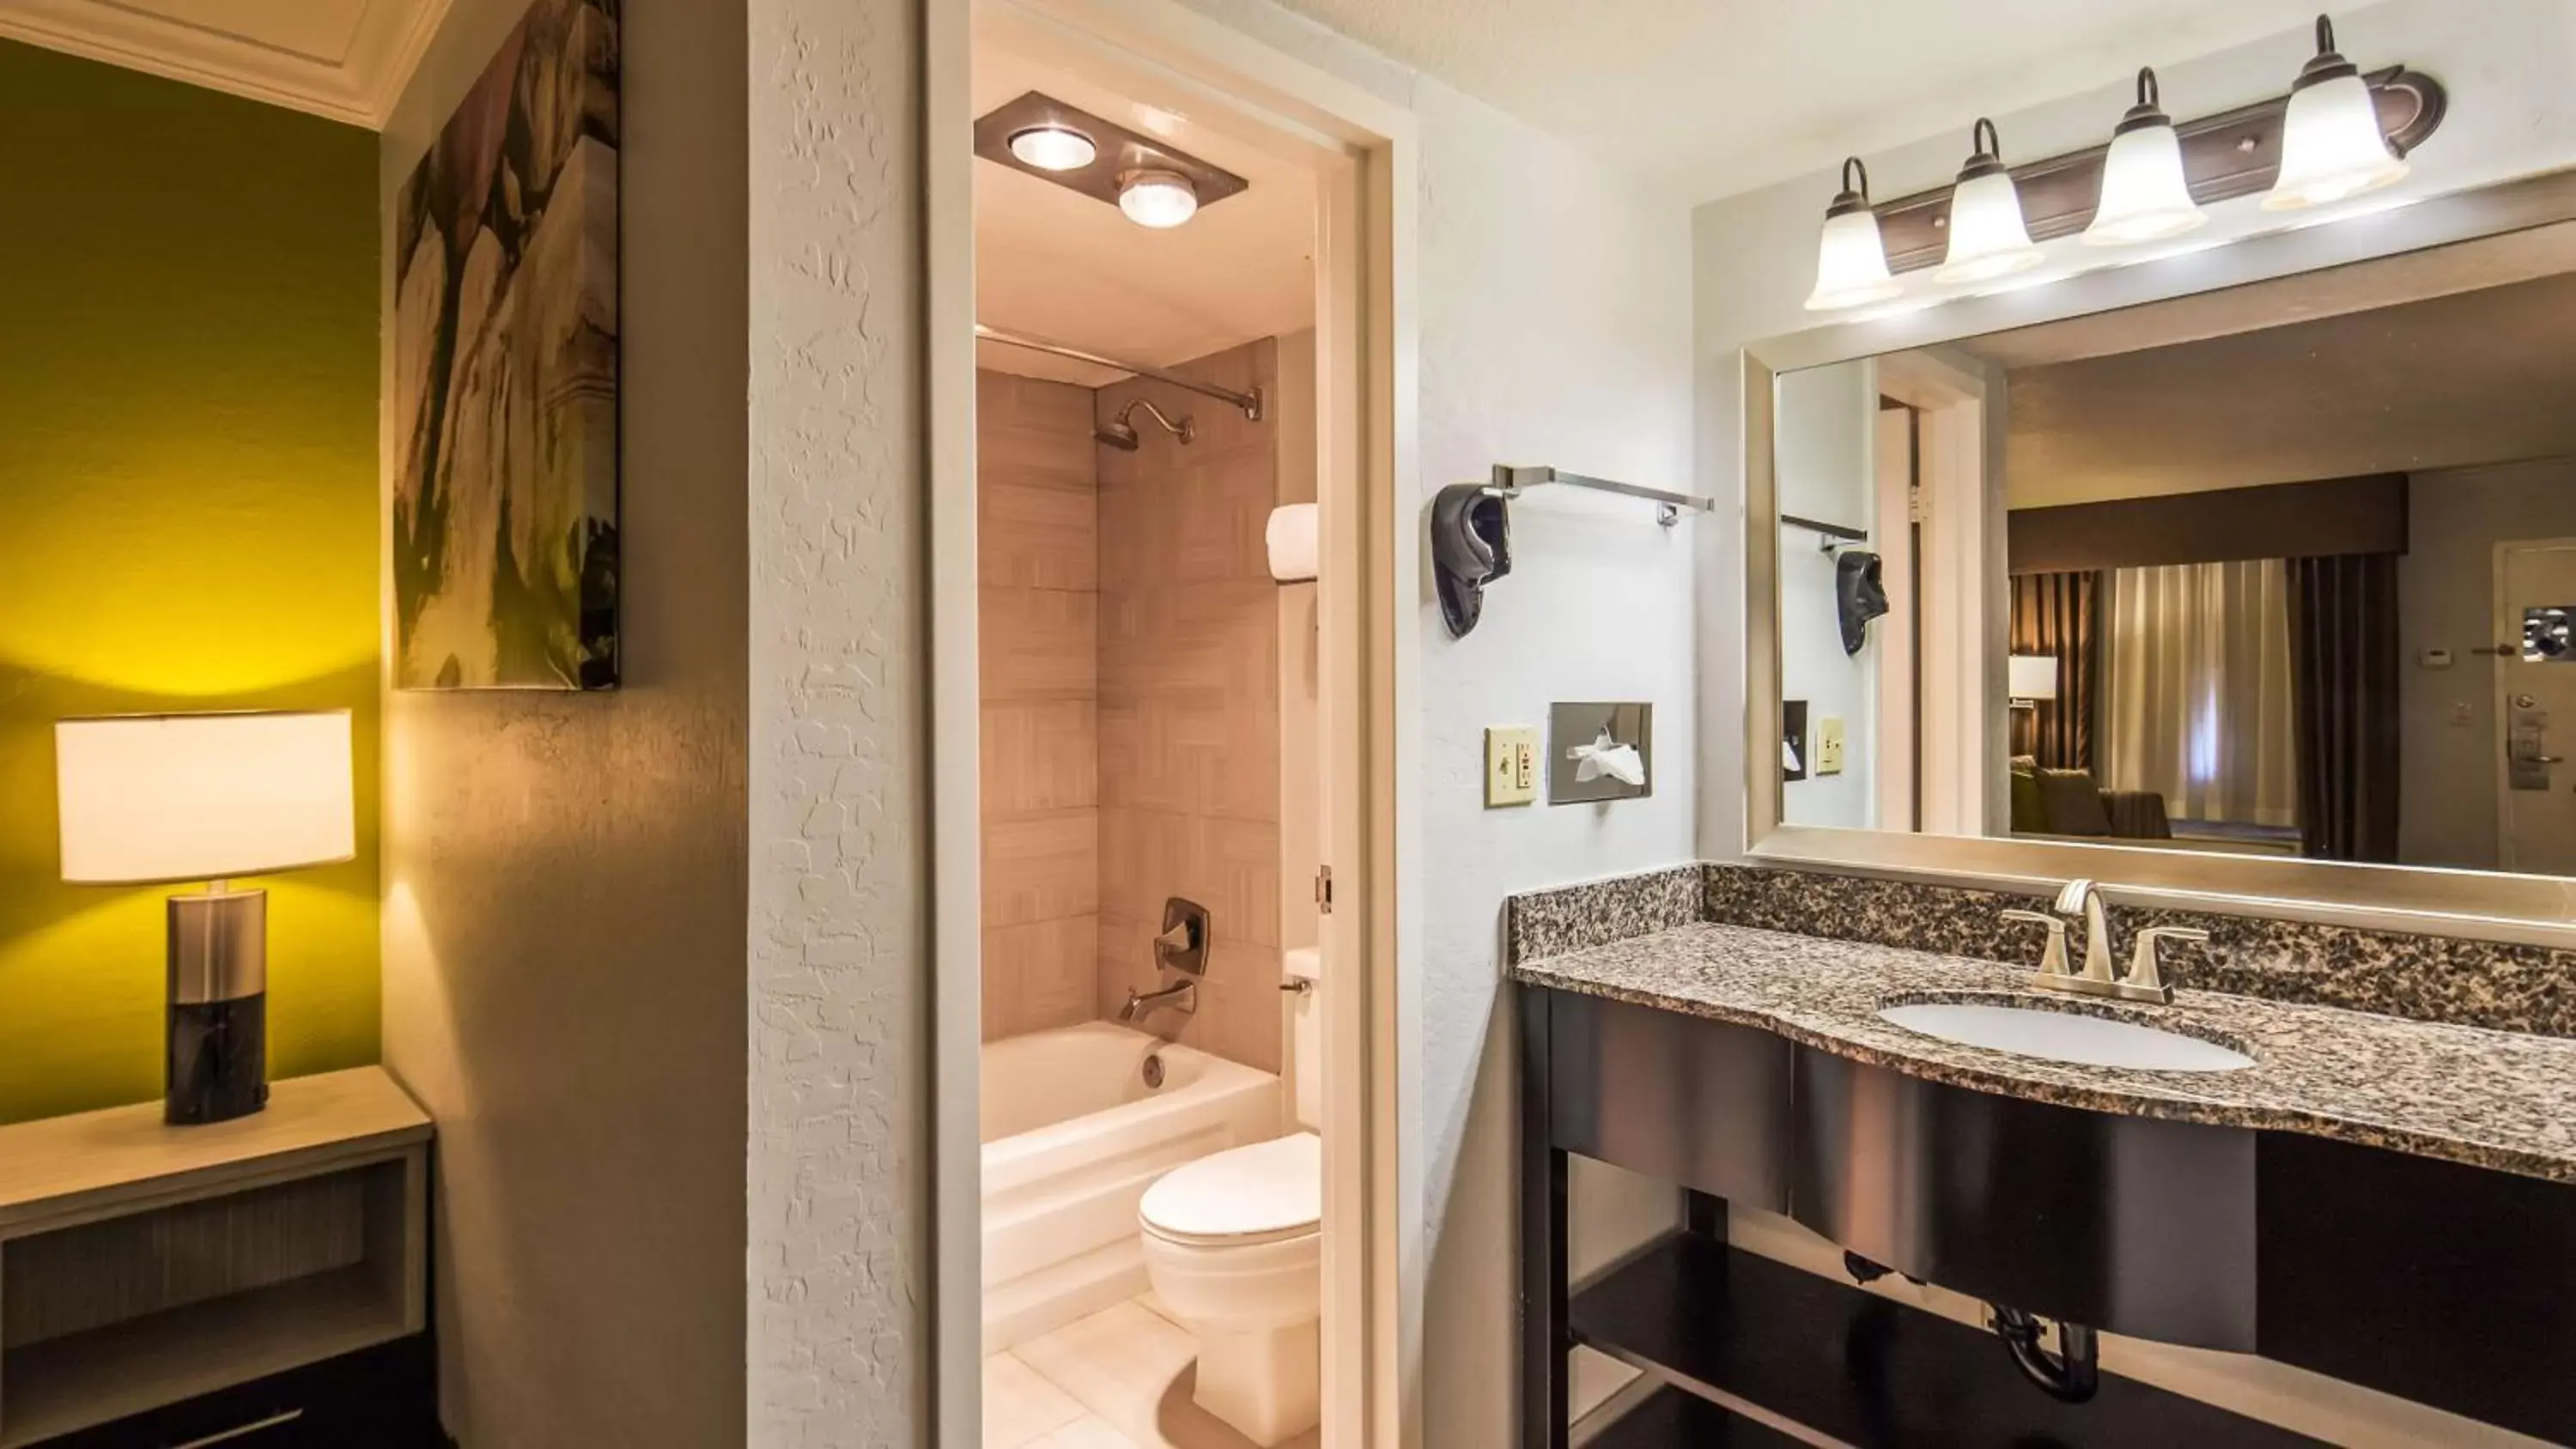 Photo of the whole room, Bathroom in Best Western InnSuites Phoenix Hotel & Suites